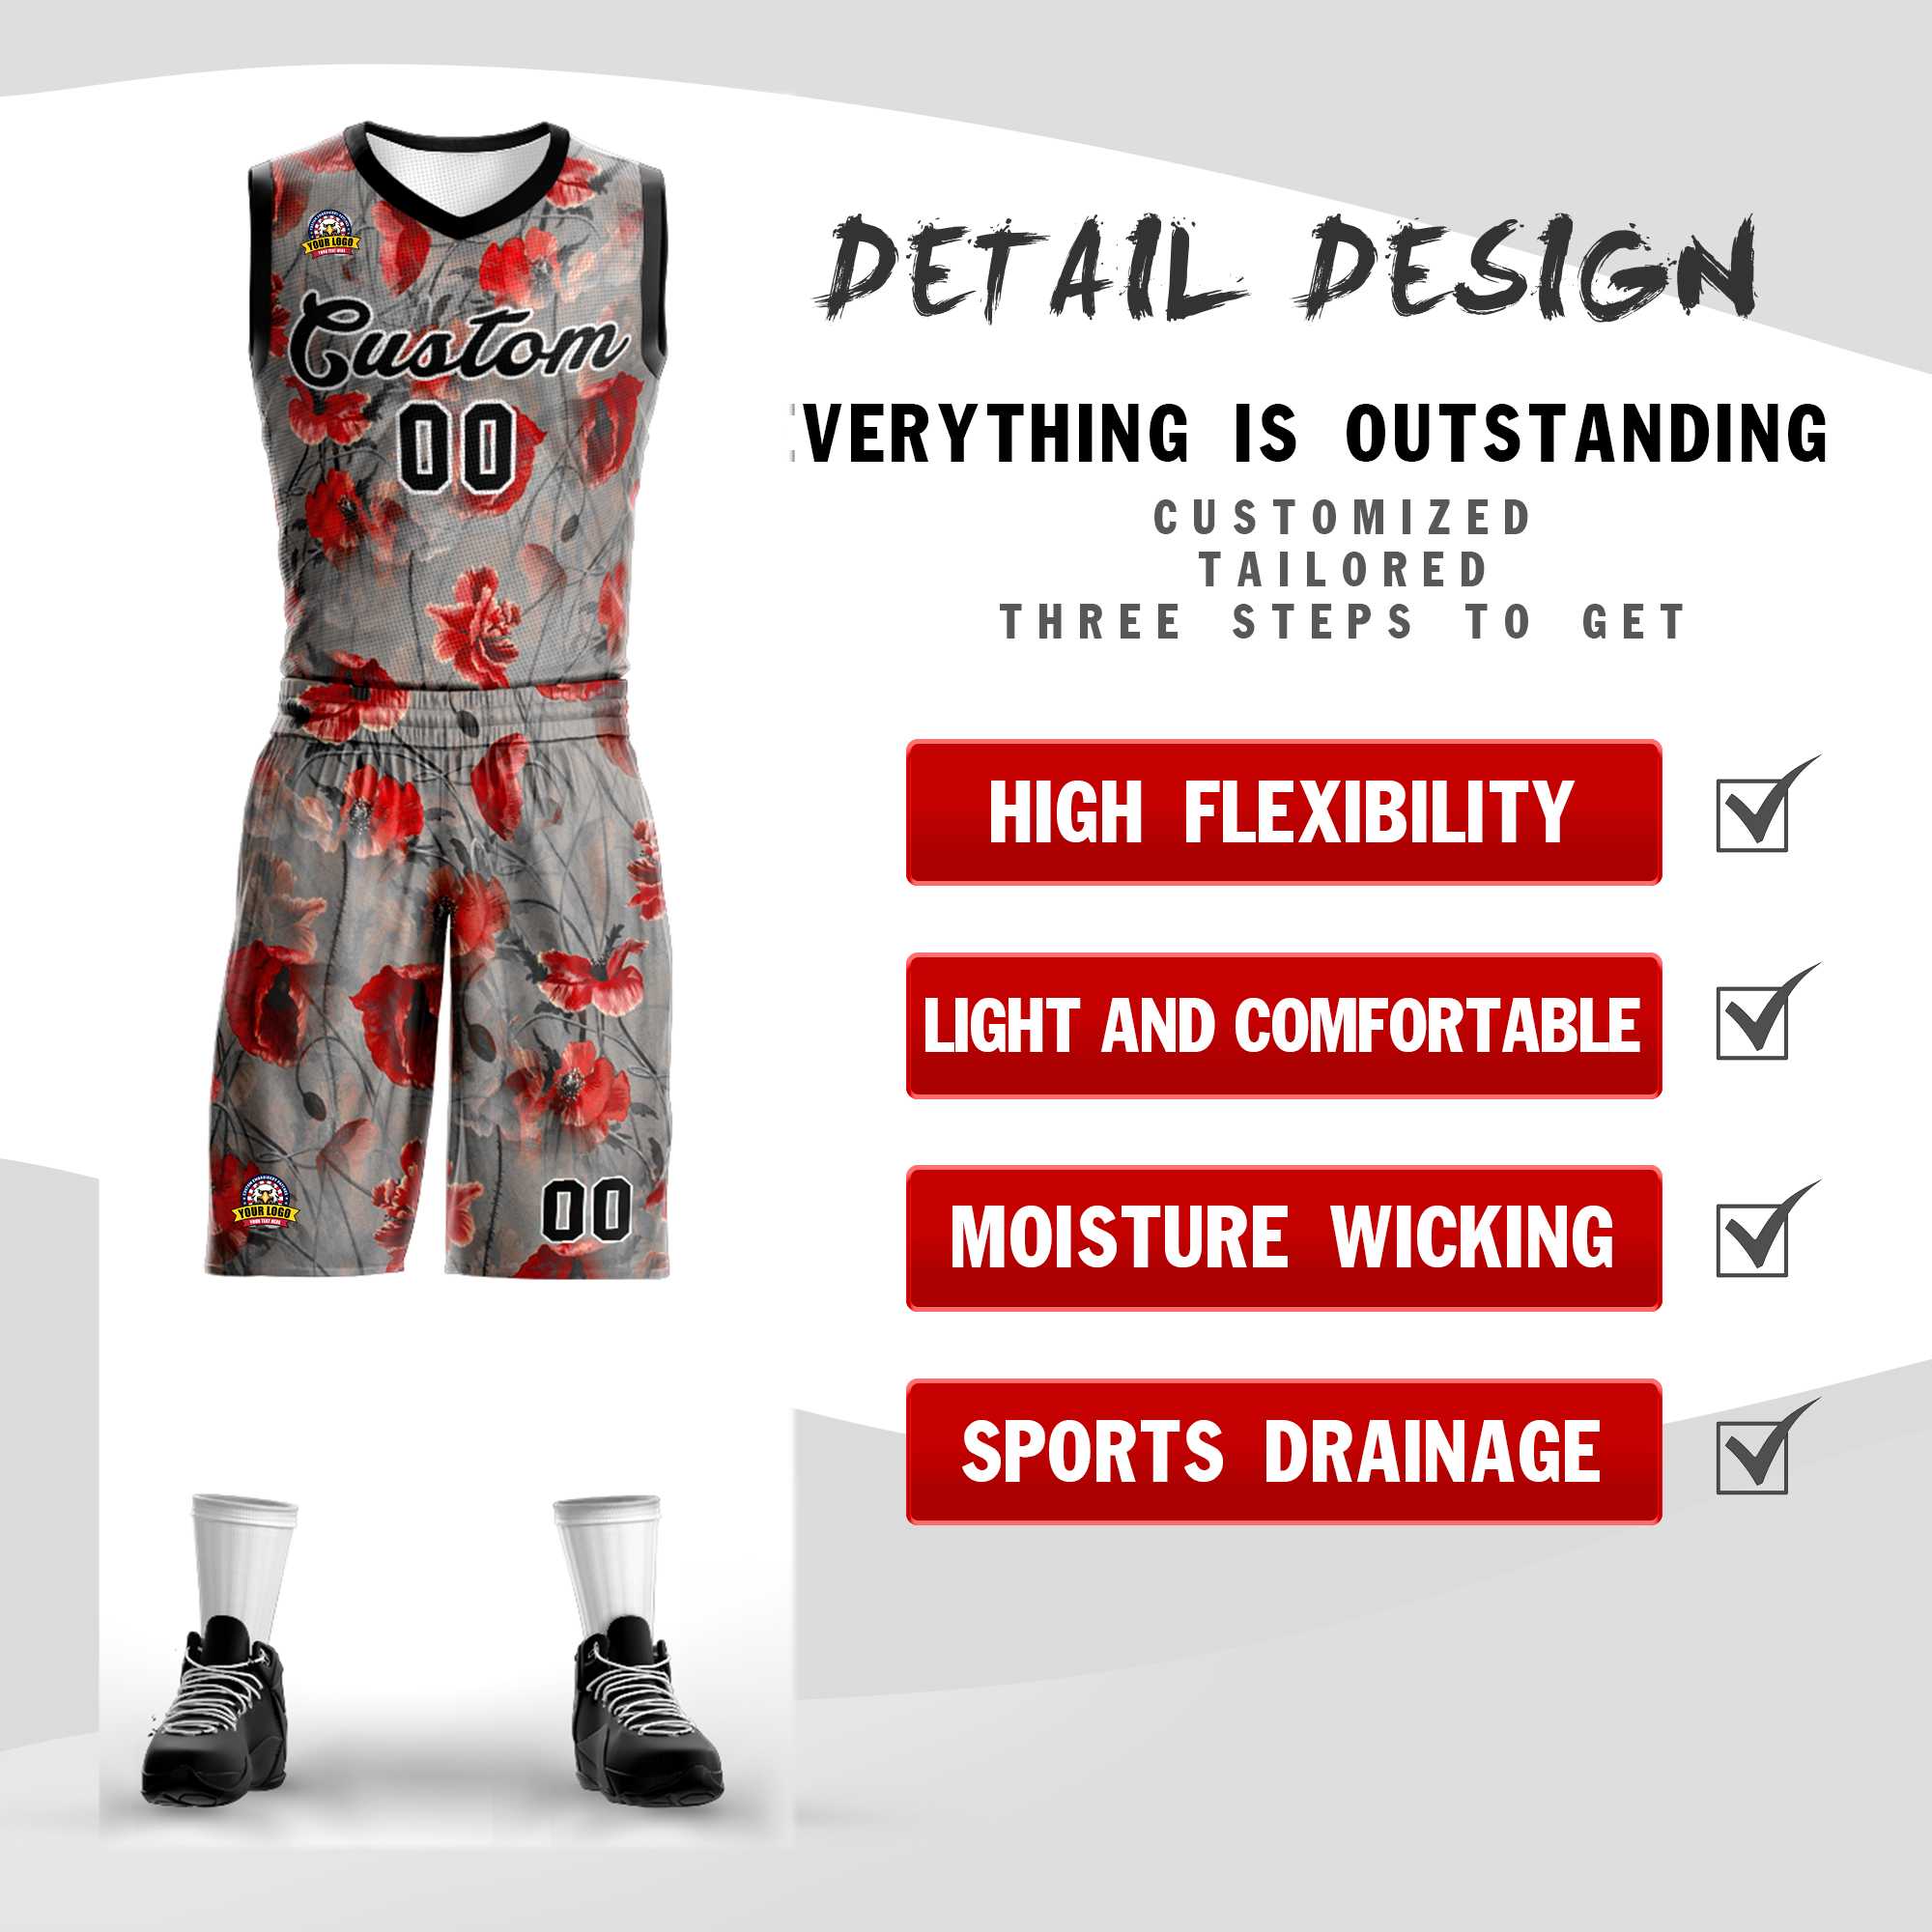 Custom Gray Black-White Graffiti Pattern Sets Mesh Basketball Jersey